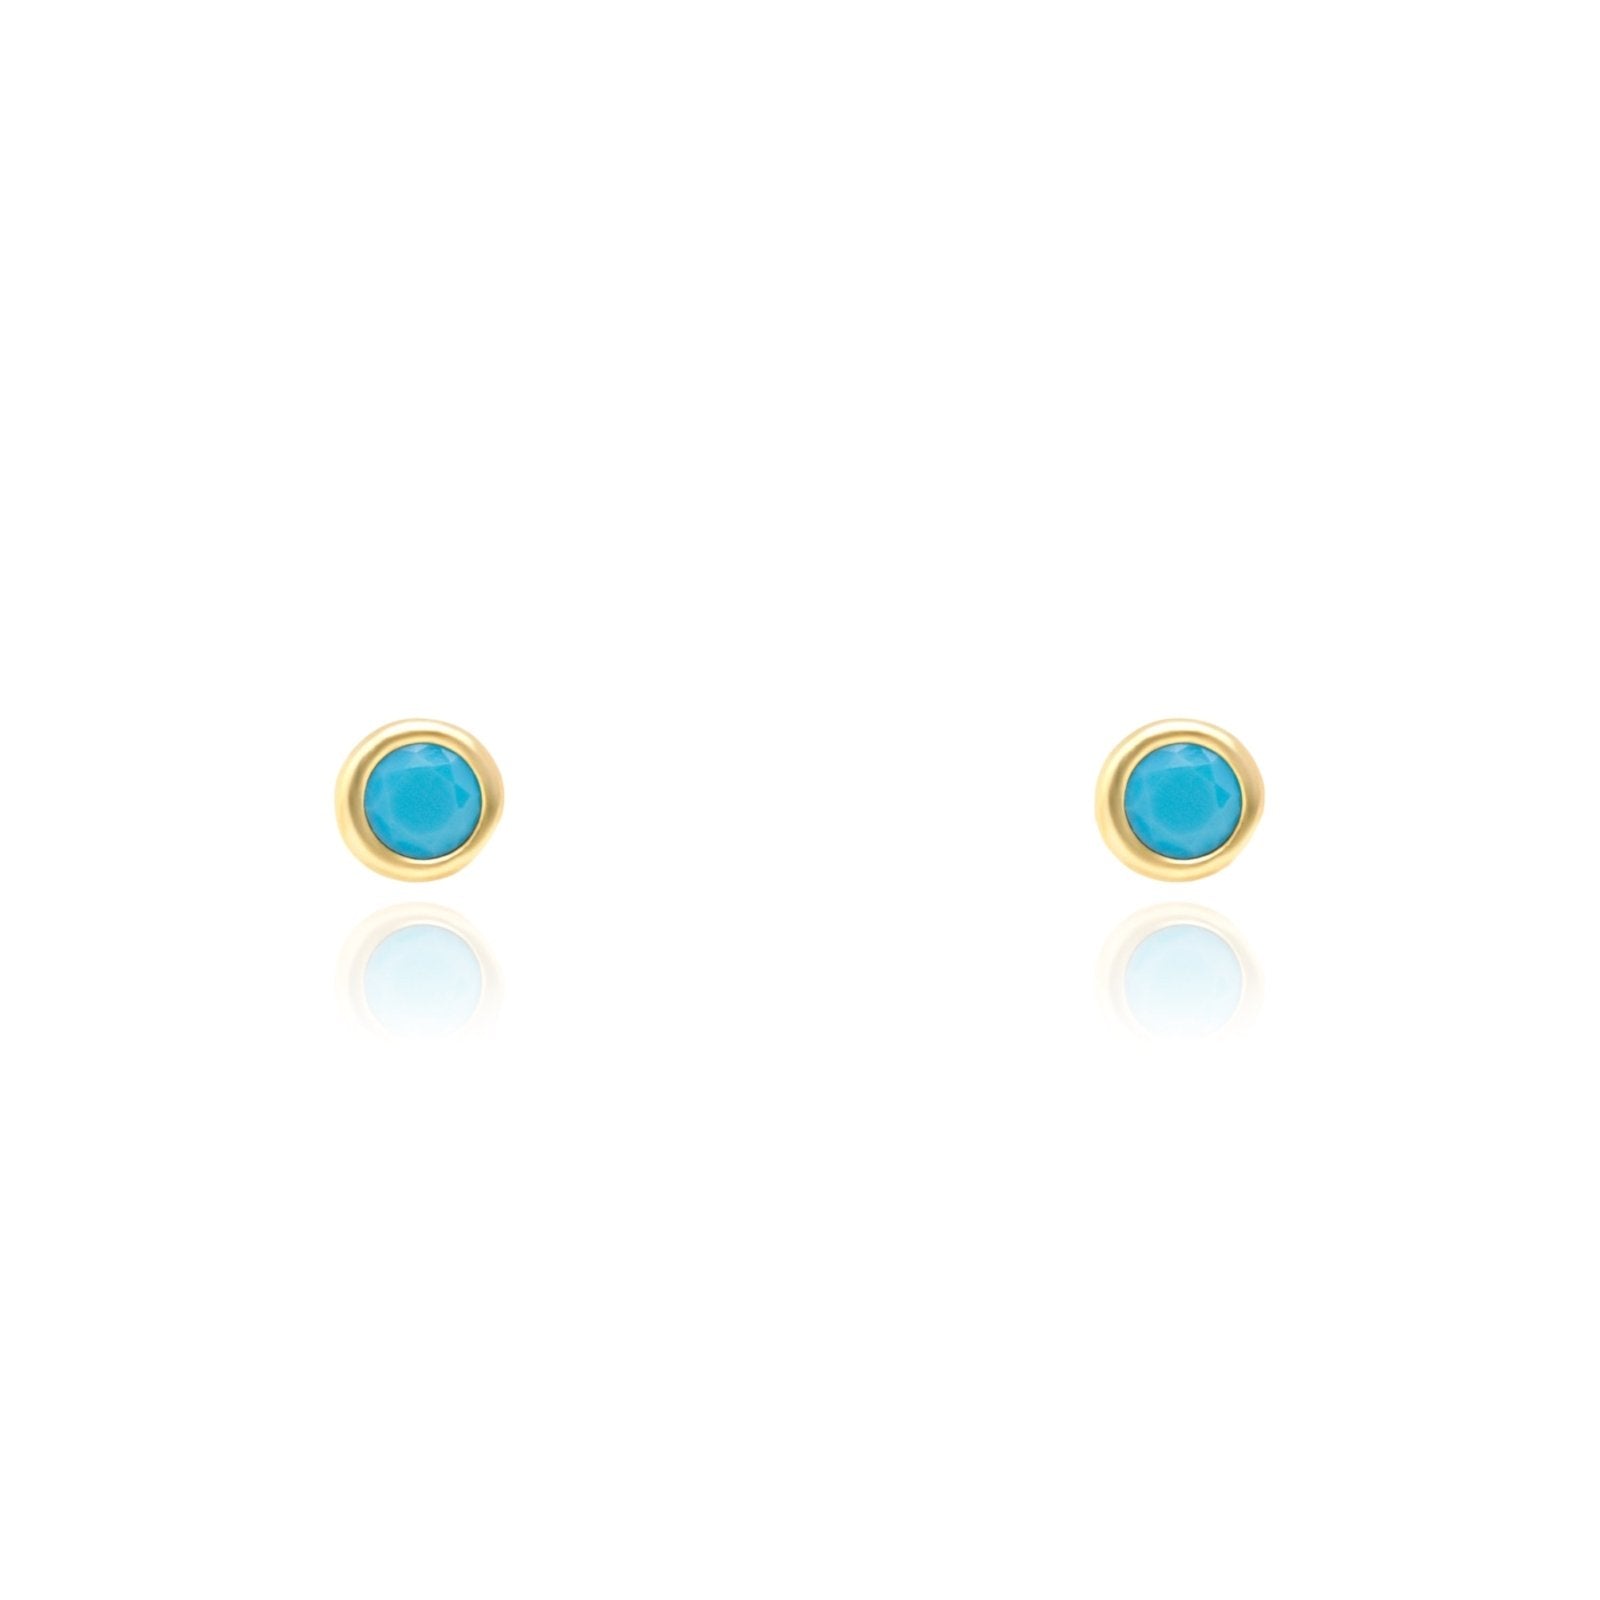 Turquoise Earrings Bezel Earrings Estella Collection #product_description# 14k Birthstone Earrings #tag4# #tag5# #tag6# #tag7# #tag8# #tag9# #tag10#